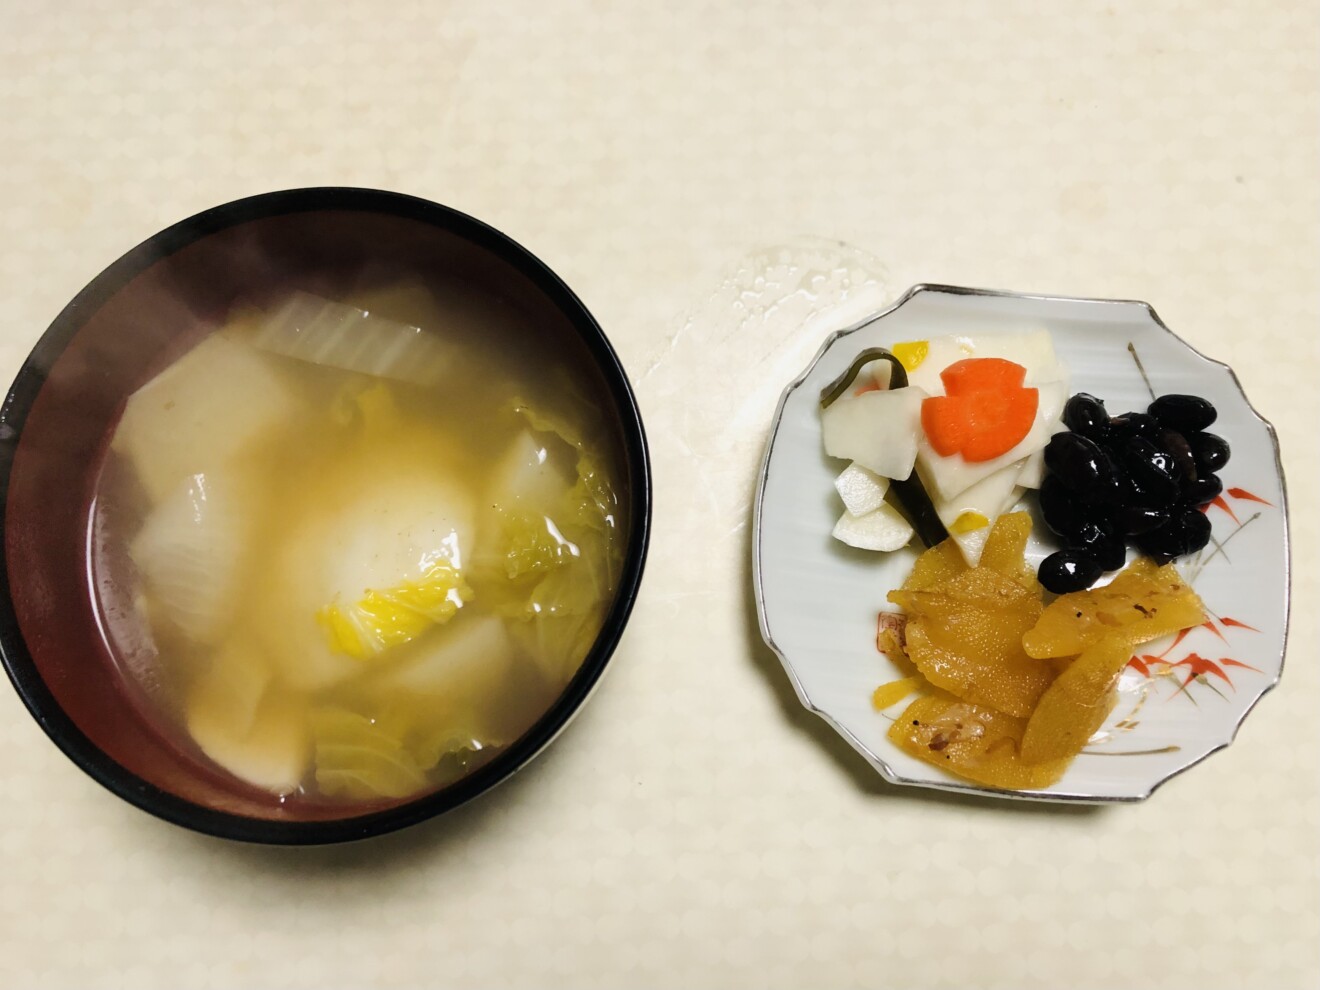 藤永慶子さんの写真 我が家の雑煮地味ですが。。